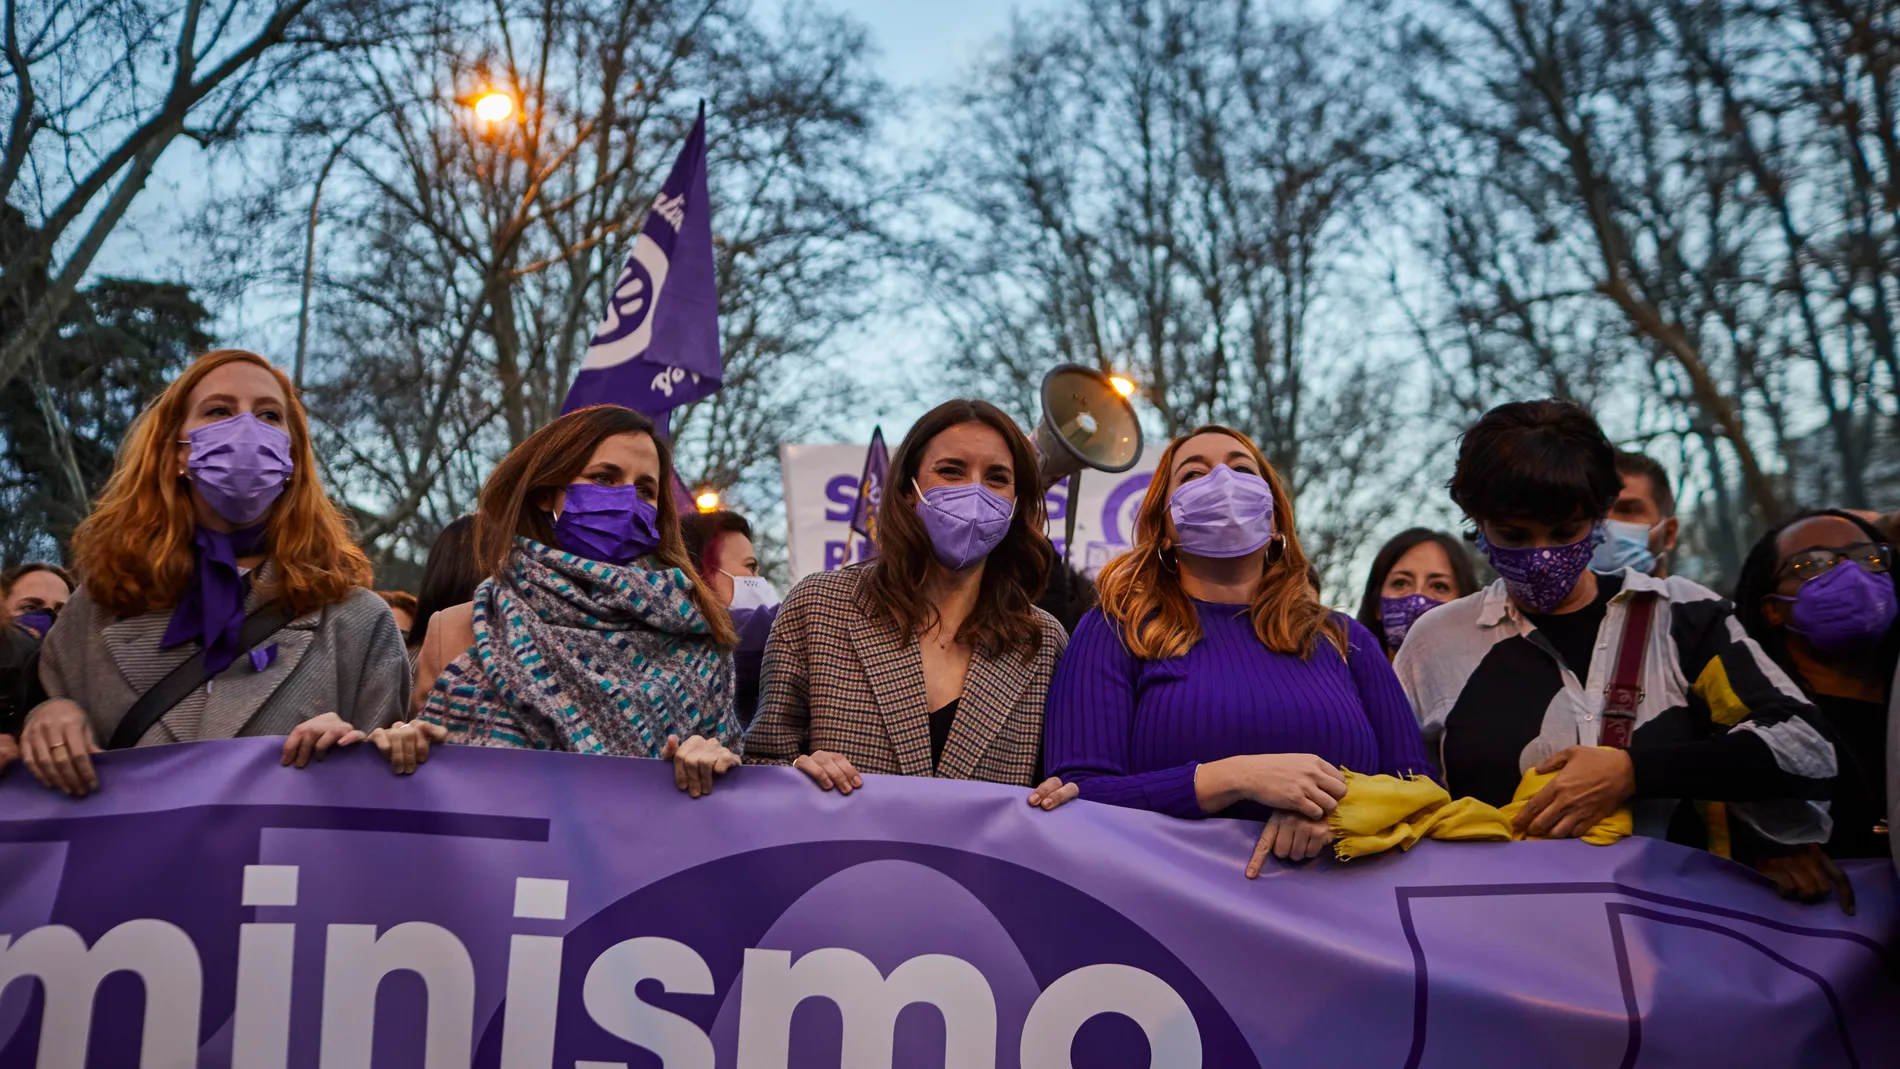 Verstrynge, Belarra, Montero y simpatizantes de Podemos, en una manifestación del 8-M